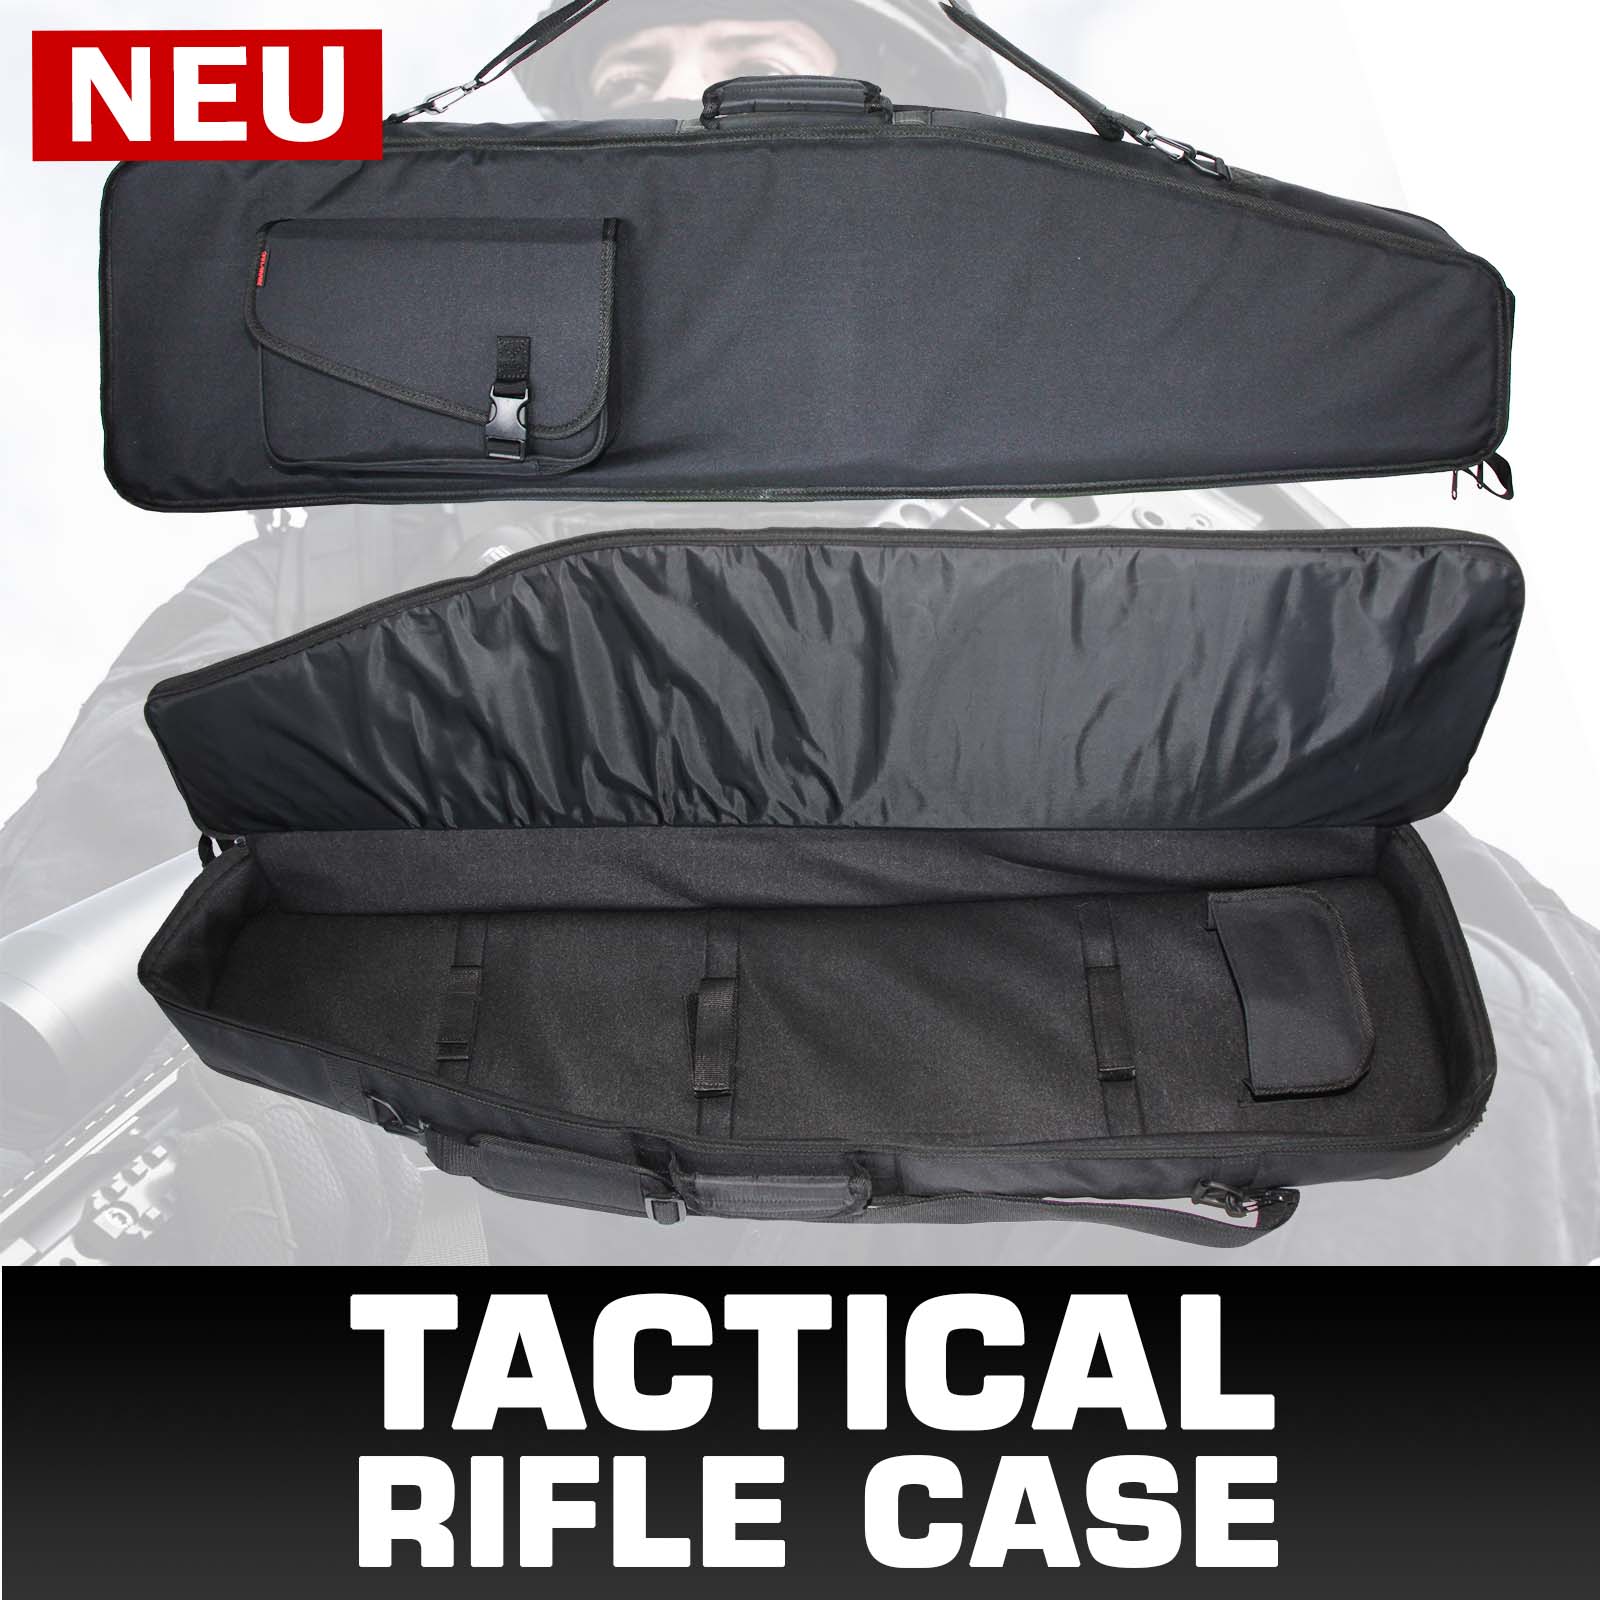 NEU: Tactical Rifle Case - AKAH - Albrecht Kind GmbH